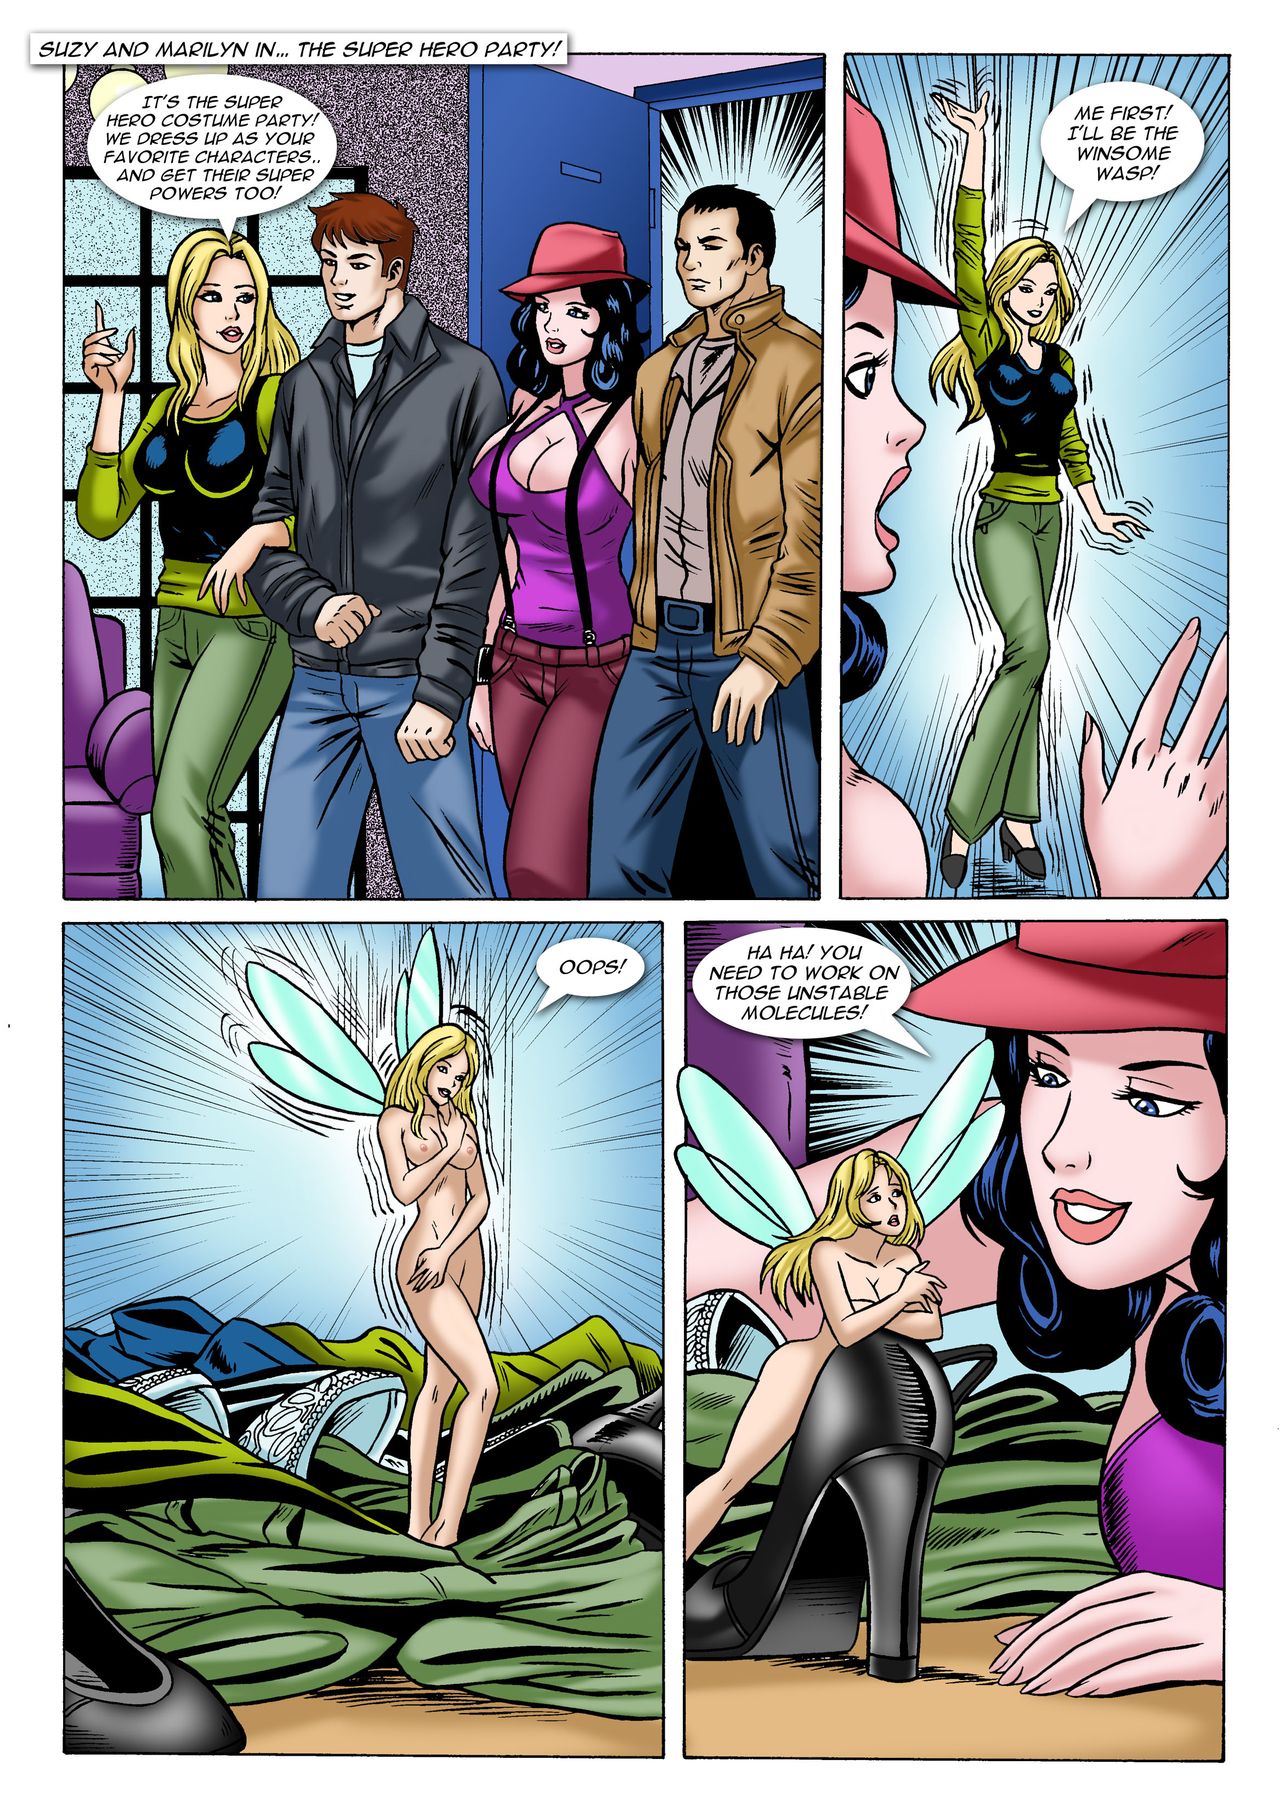 Nude Superhero Toons - Super Hero Party comic porn - HD Porn Comics